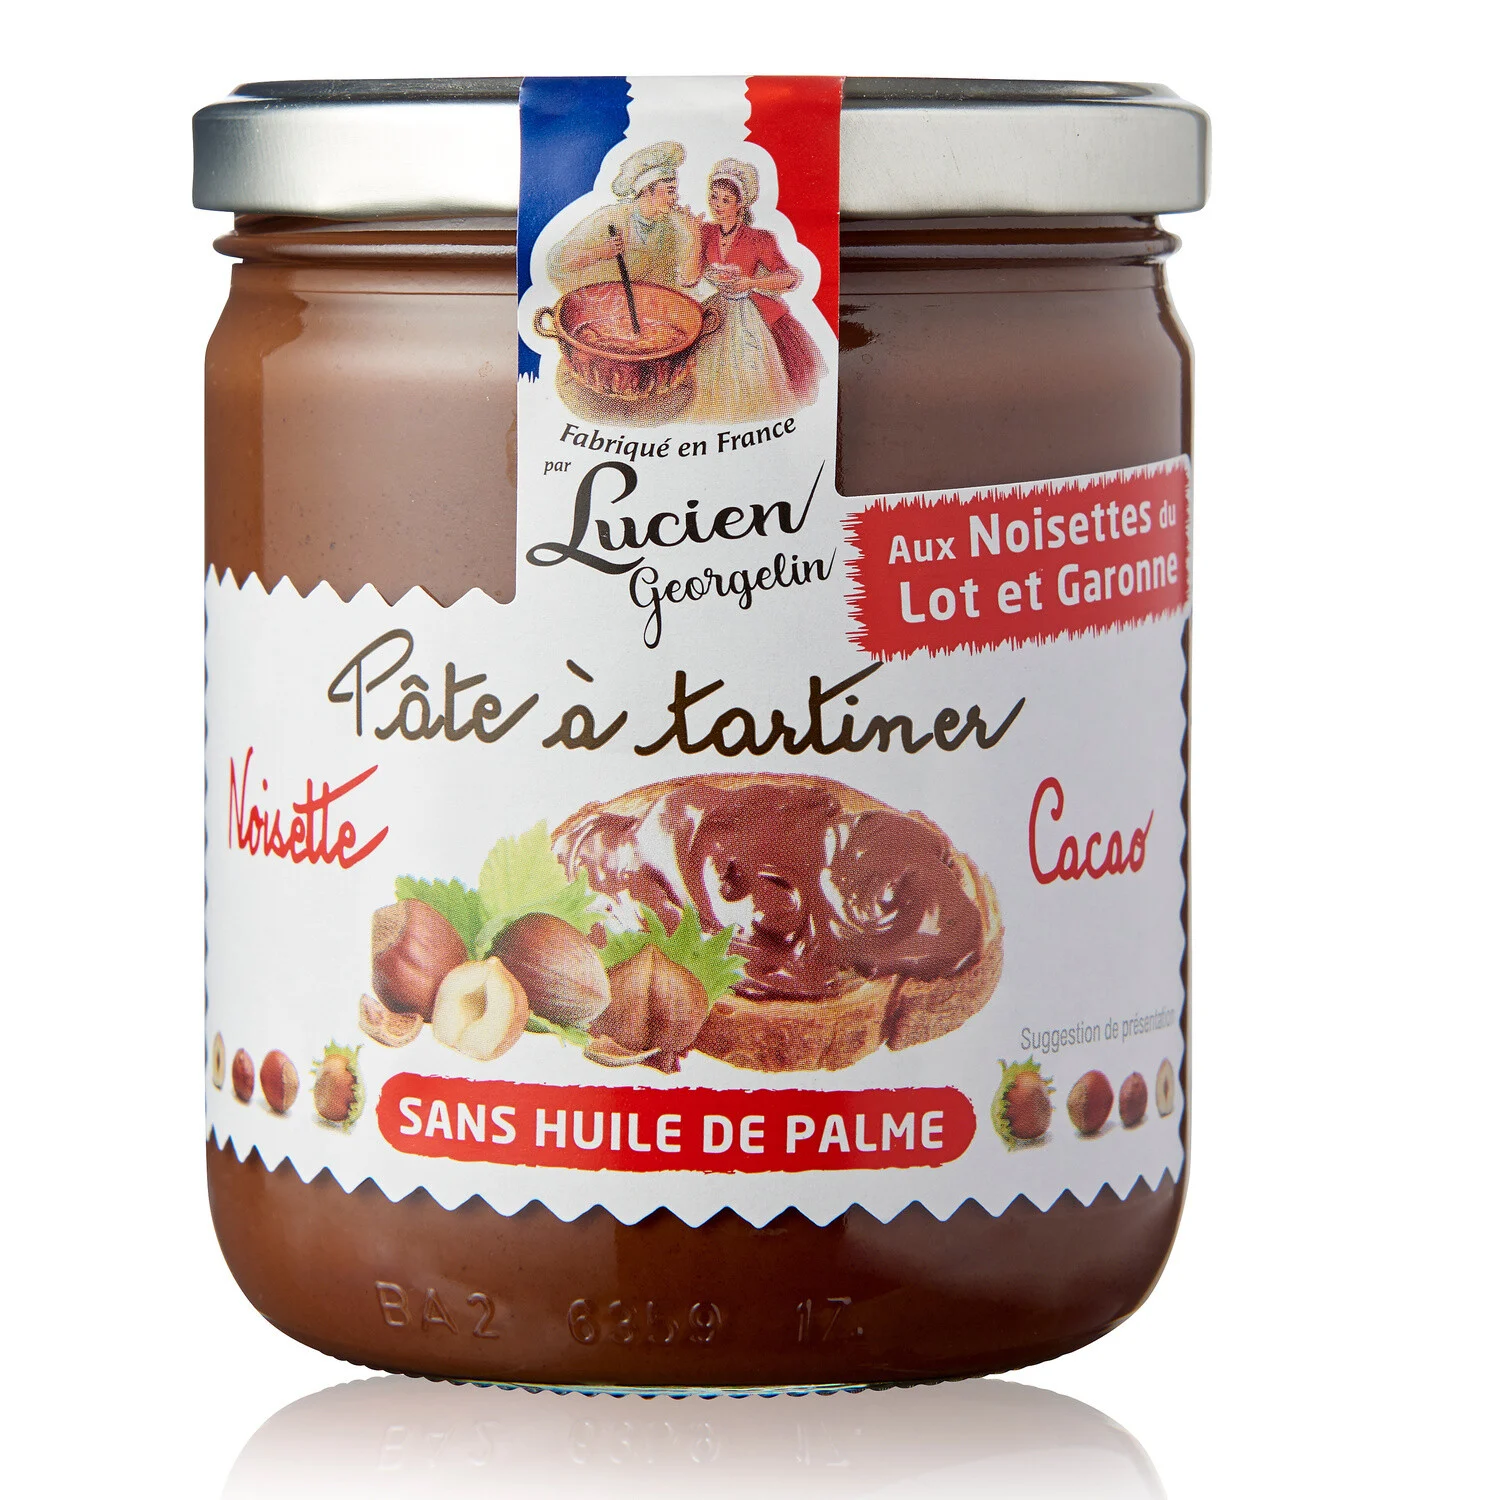 Haselnussaufstrich aus Lot Et Garonne und Kakao
Ohne Palmöl 400g - LUCIEN GEORGELIN